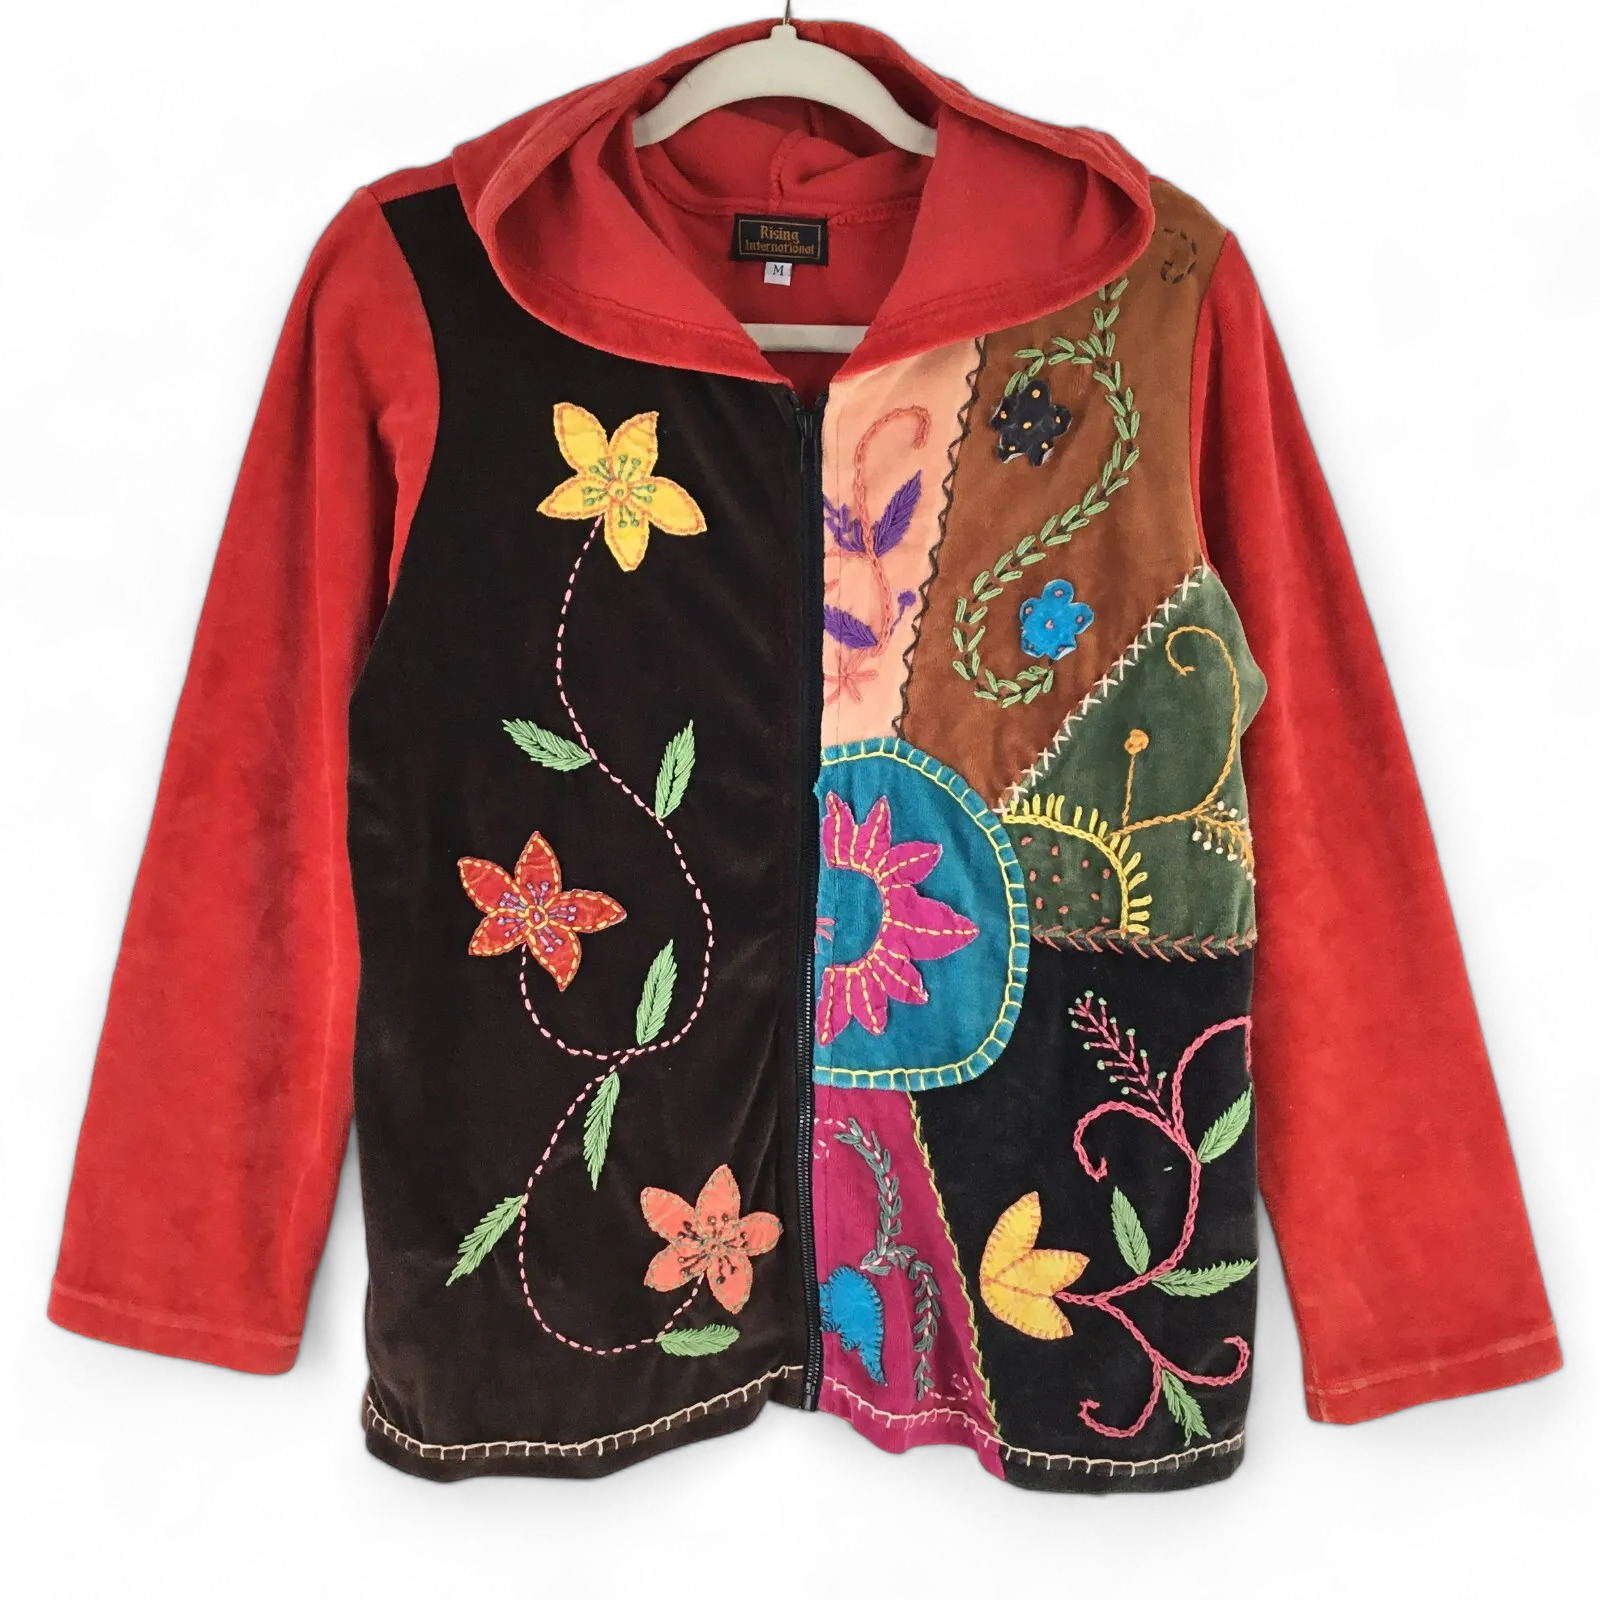 Rising International Hoodie Jacket Womens sz M Velvet Full Zip Floral Embroidery